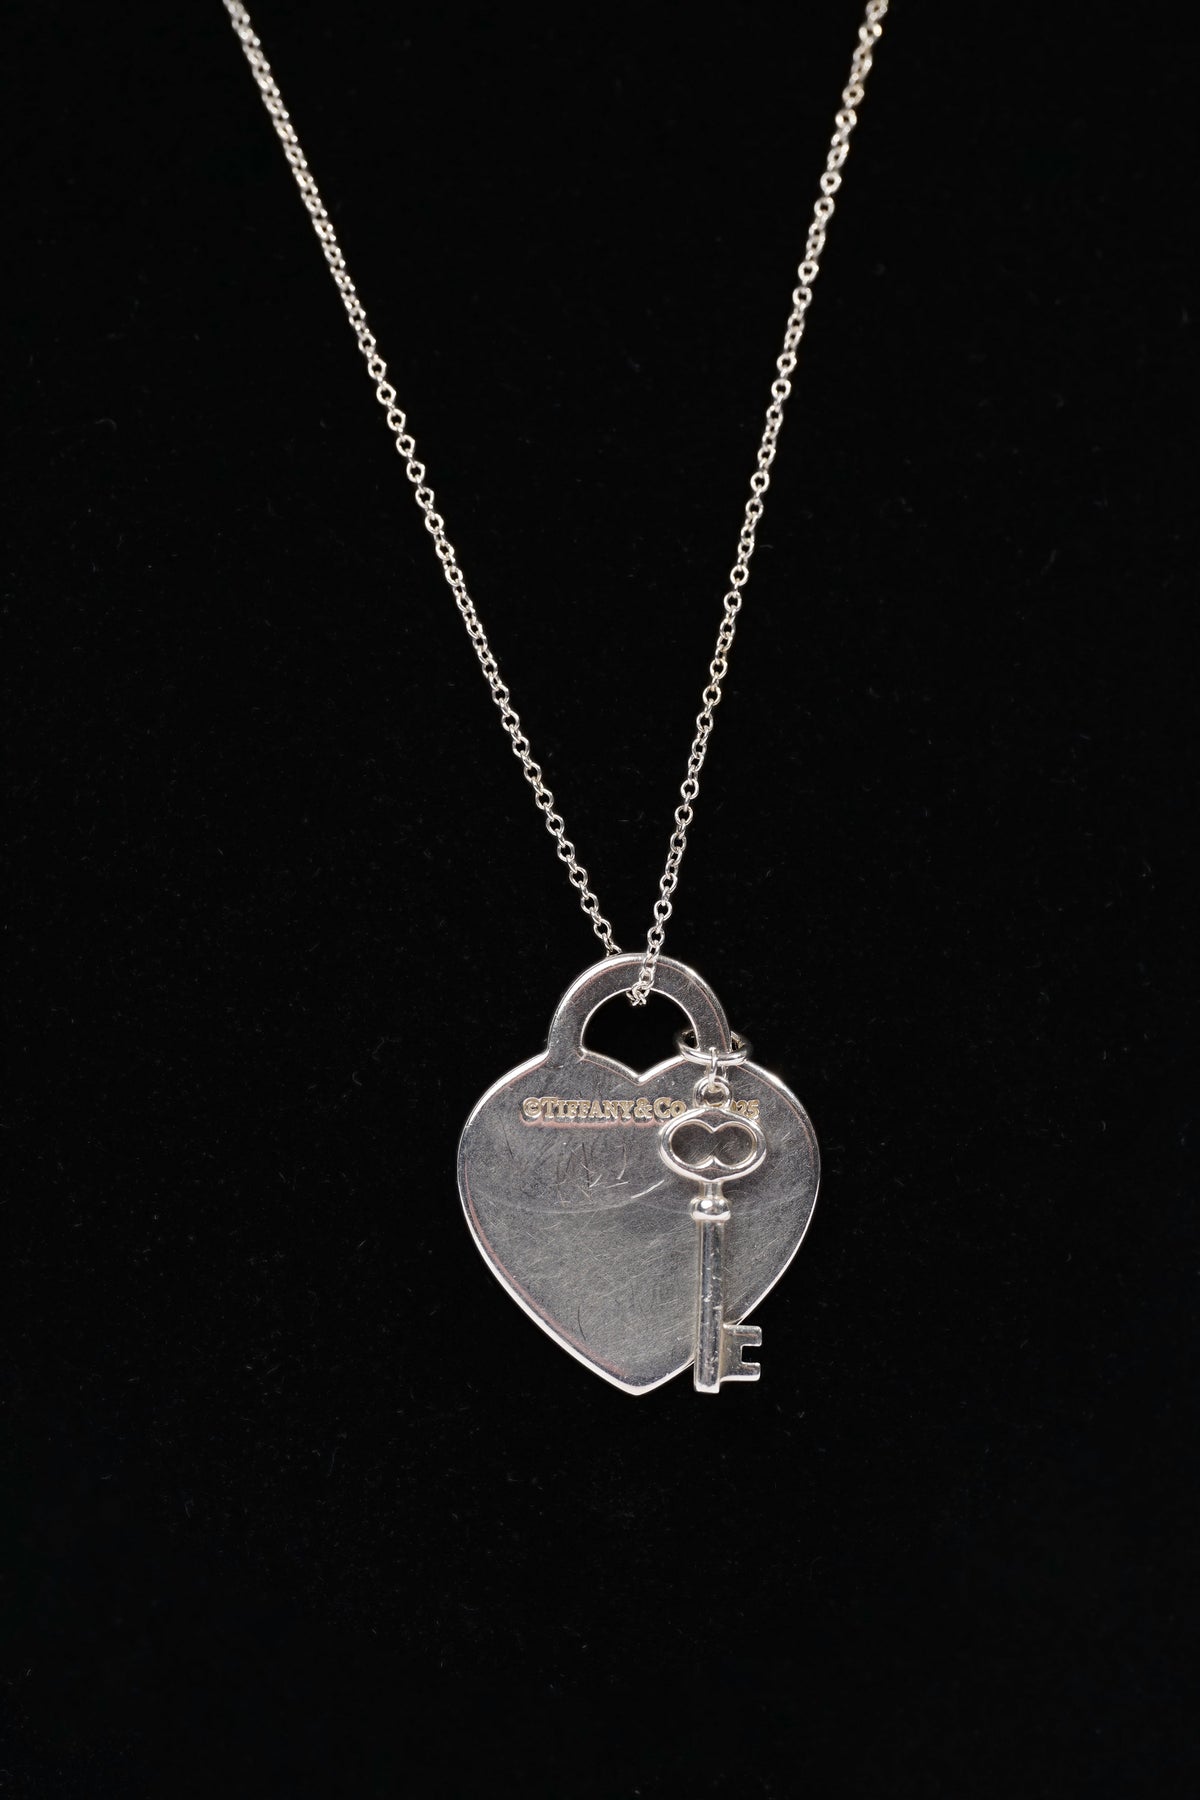 Tiffany & Co Heart Key Necklace